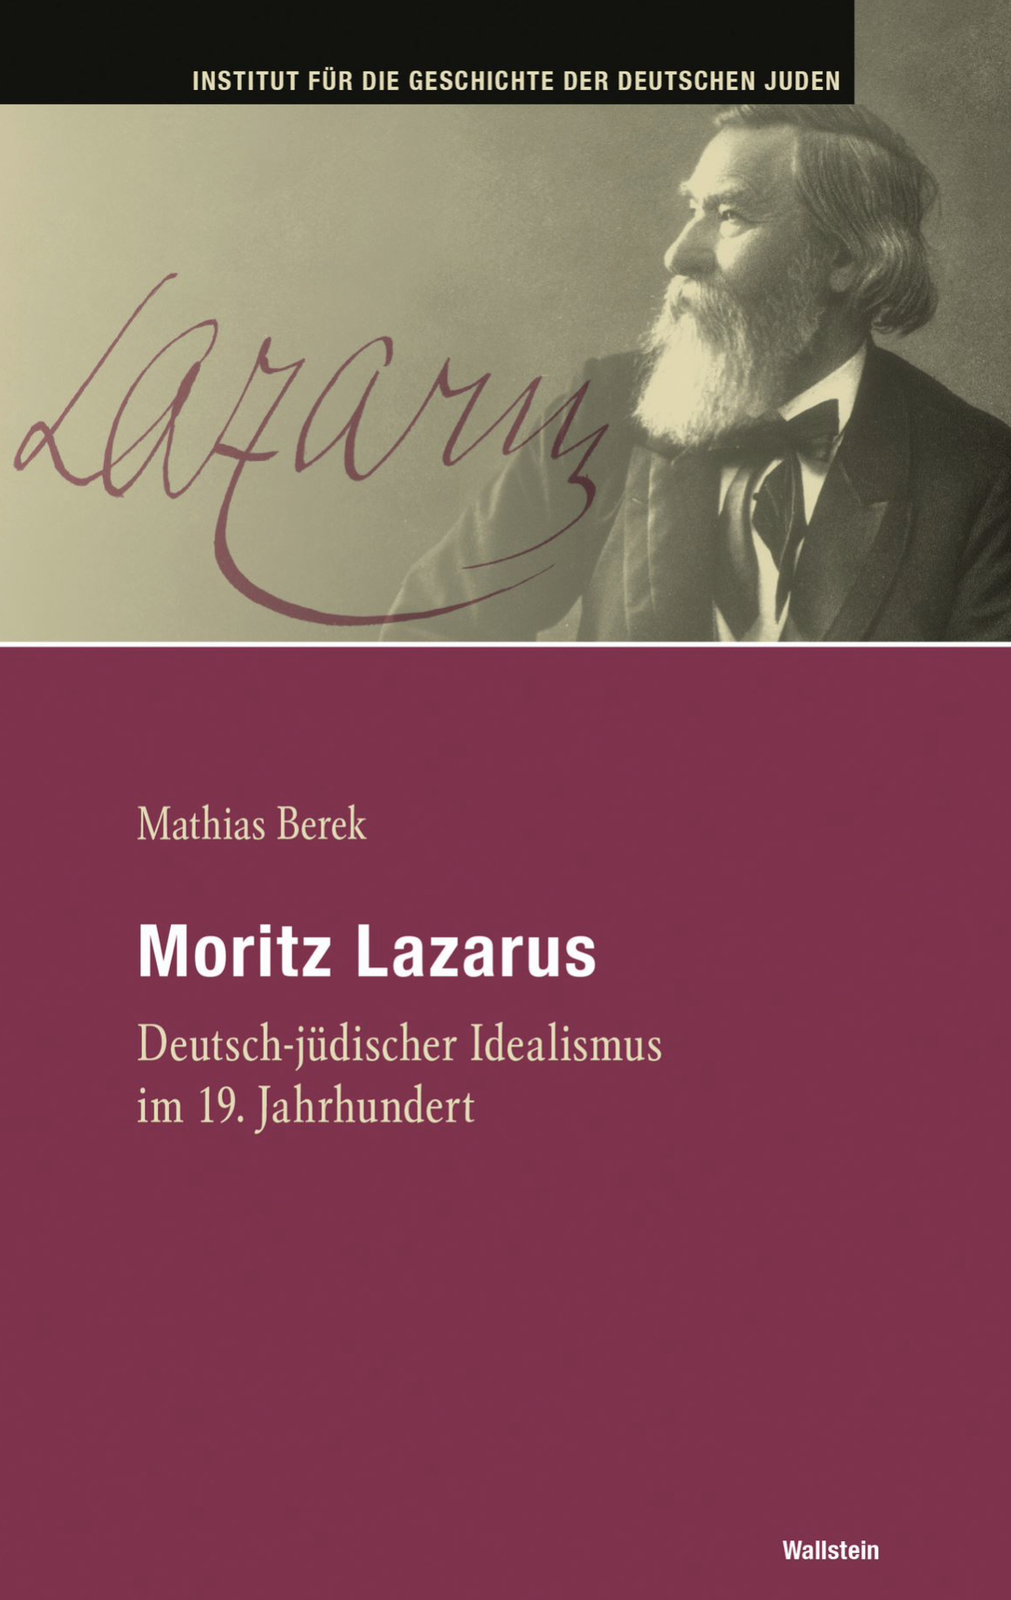 2023, Mathias Berek, Moritz Lazarus – Deutsch-jüdischer Idealismus im 19. Jahrhundert, Wallstein Verlag,